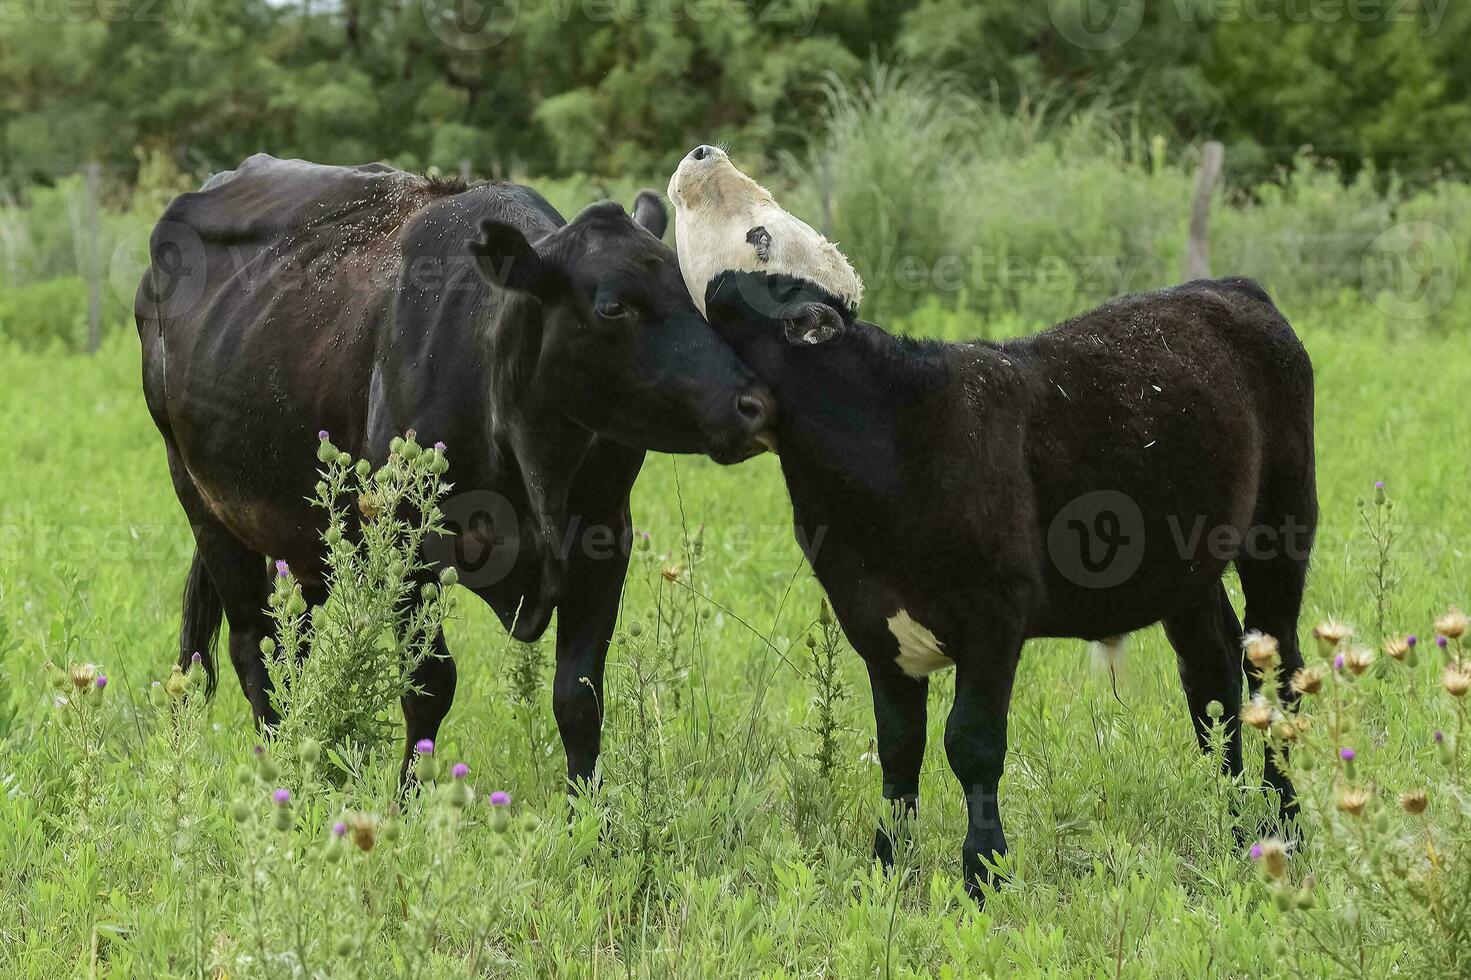 das Vieh und Kalb Saugen, Argentinien Land, la Pampa Provinz, Argentinien. foto